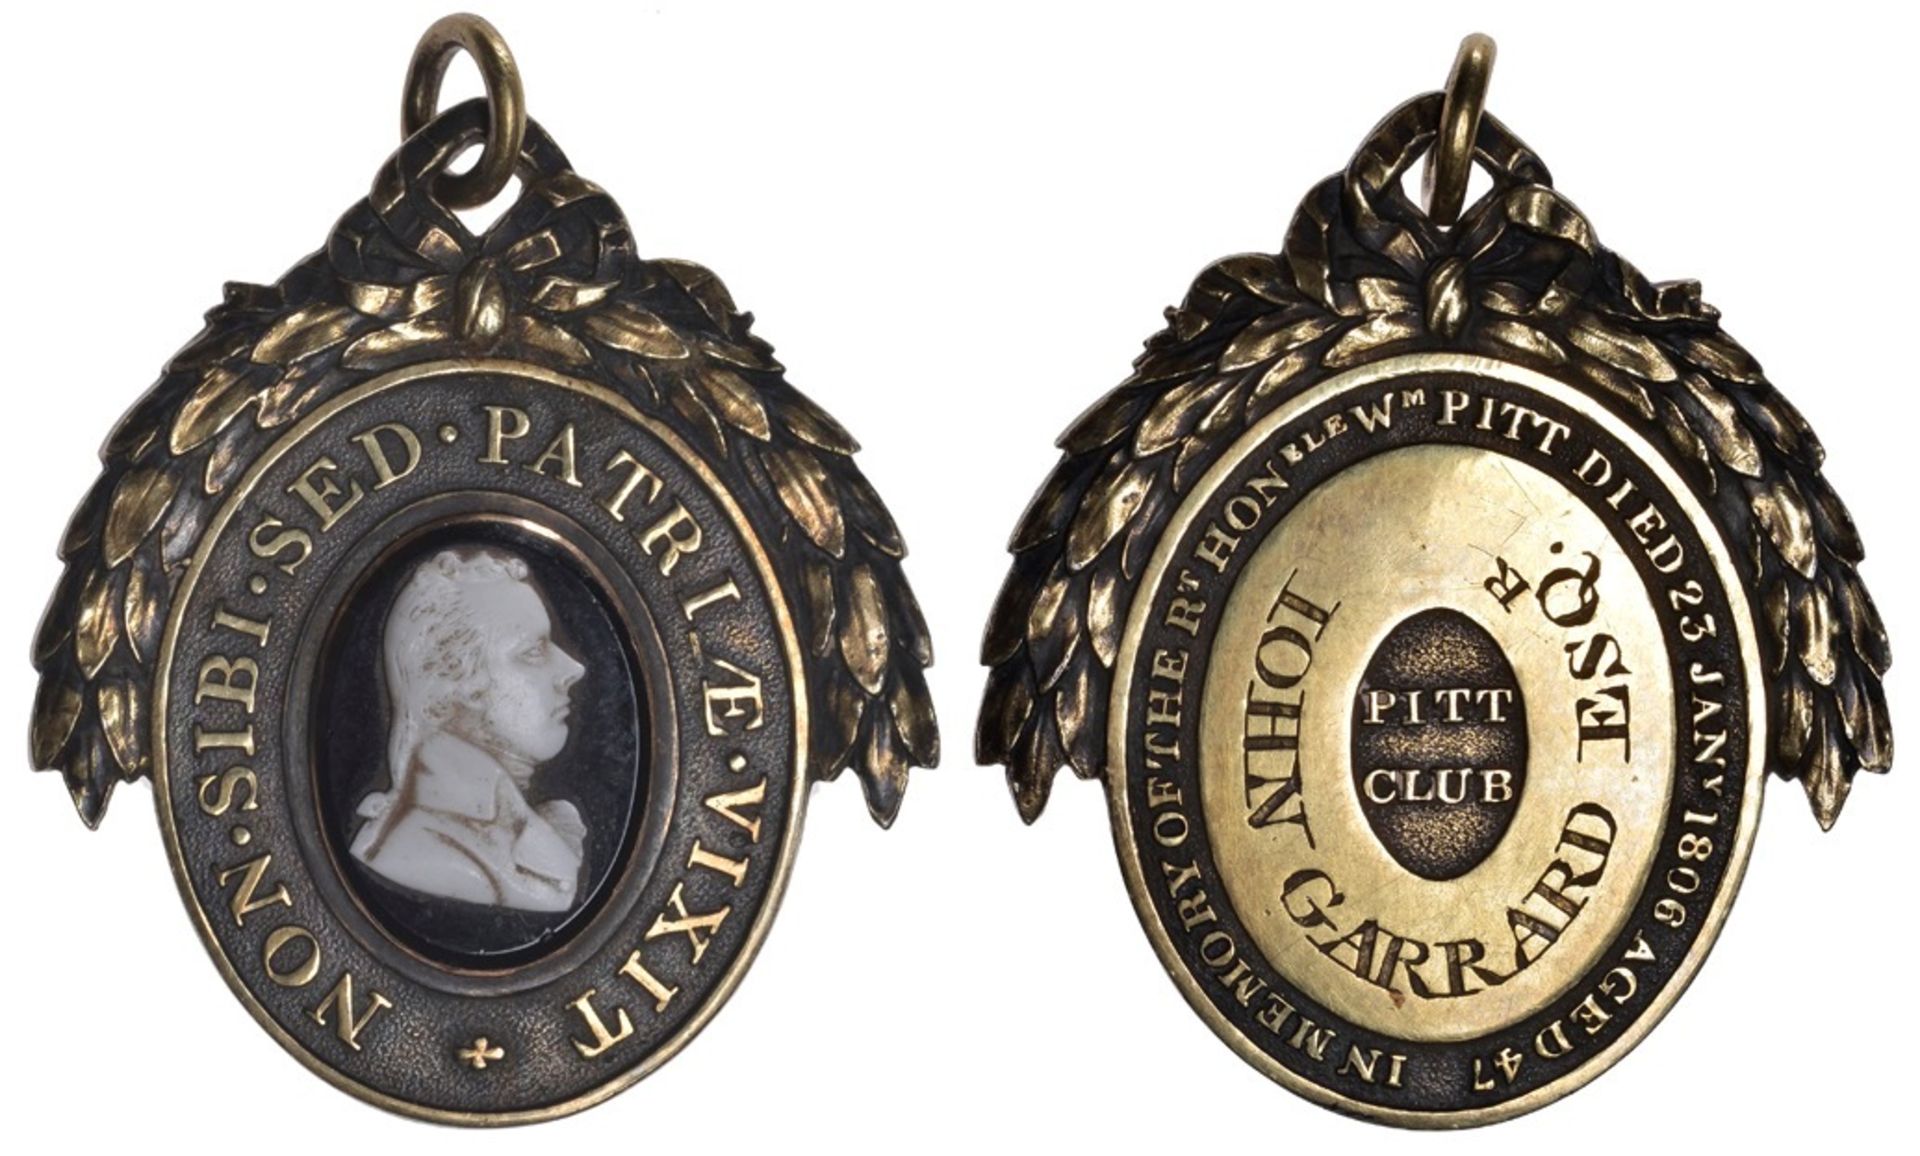 Pitt Club, an oval gilt badge, bust in white onyx on black onyx field, rev. named (John Garr...